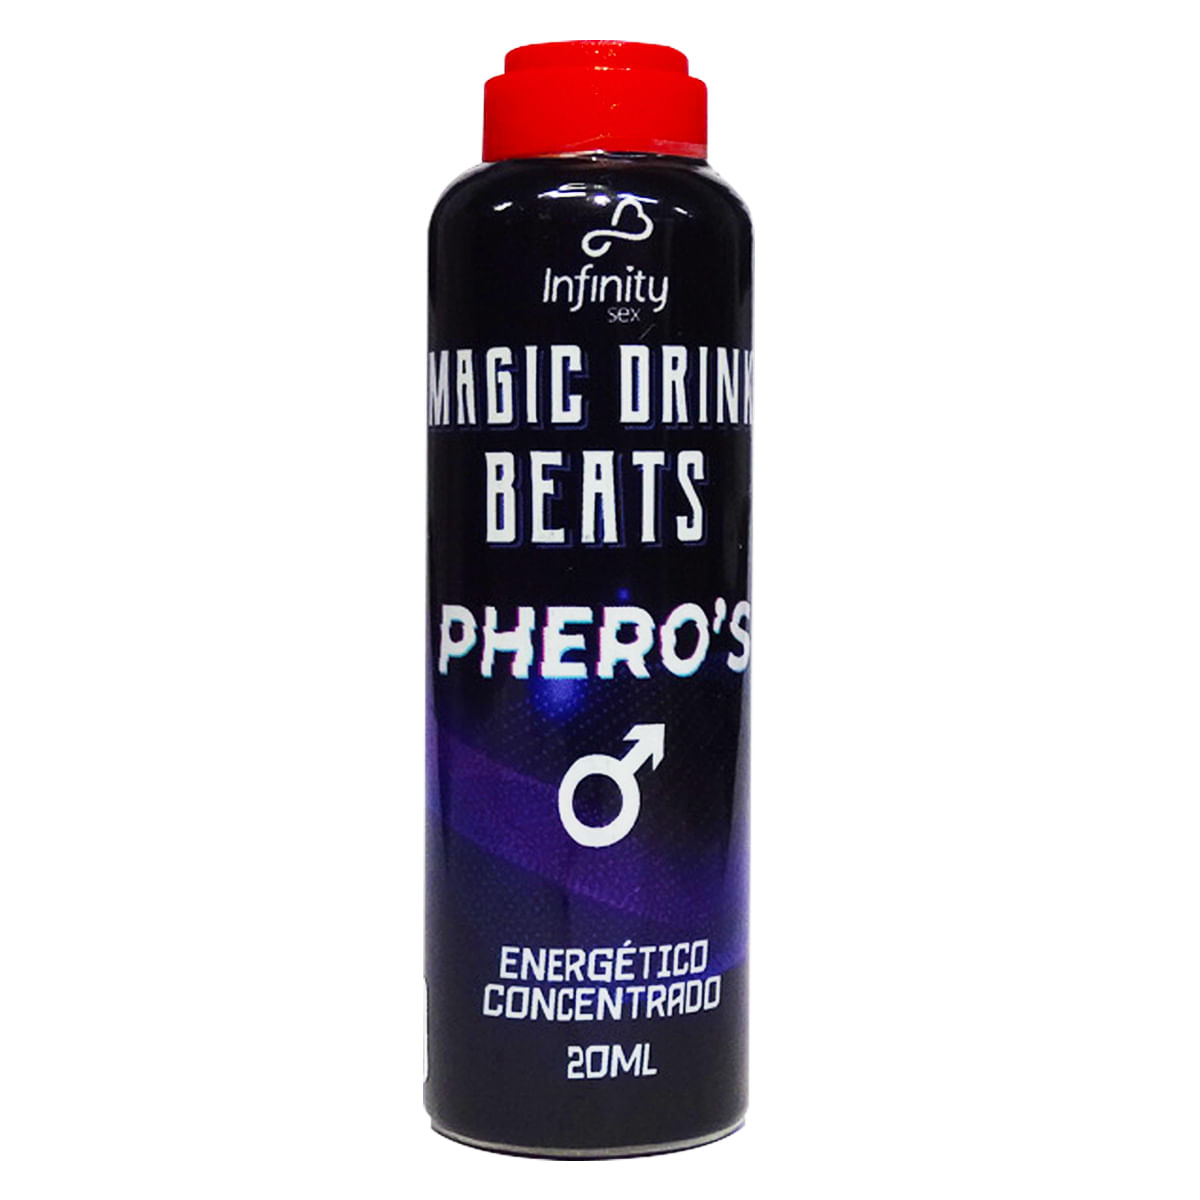 Magic Drink Beats Pheros Energético Concentrado Alcoólico Masculino 20ml Linha Pheros Infinity Sex